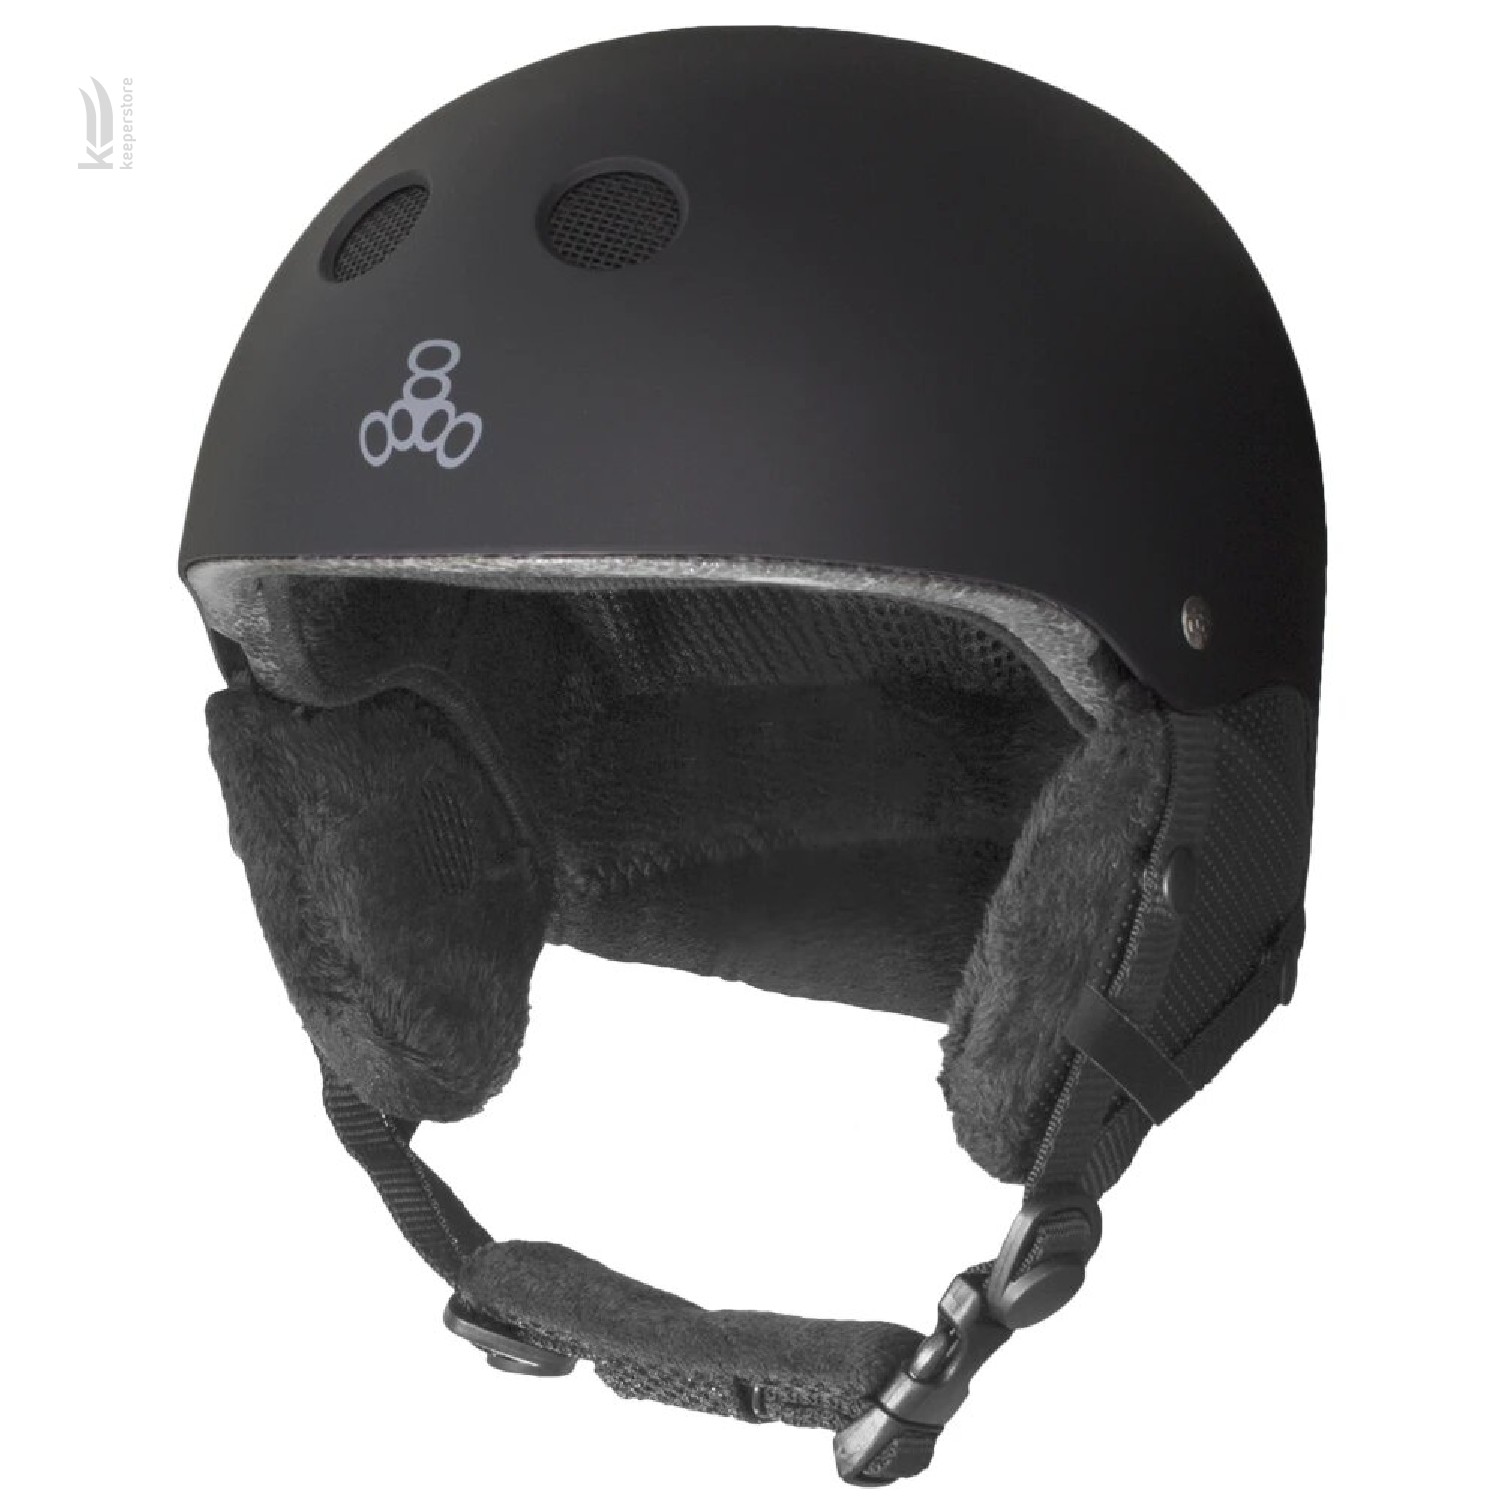 Характеристики шлем Triple8 Halo Snow Standart Black Rubber (S/M)